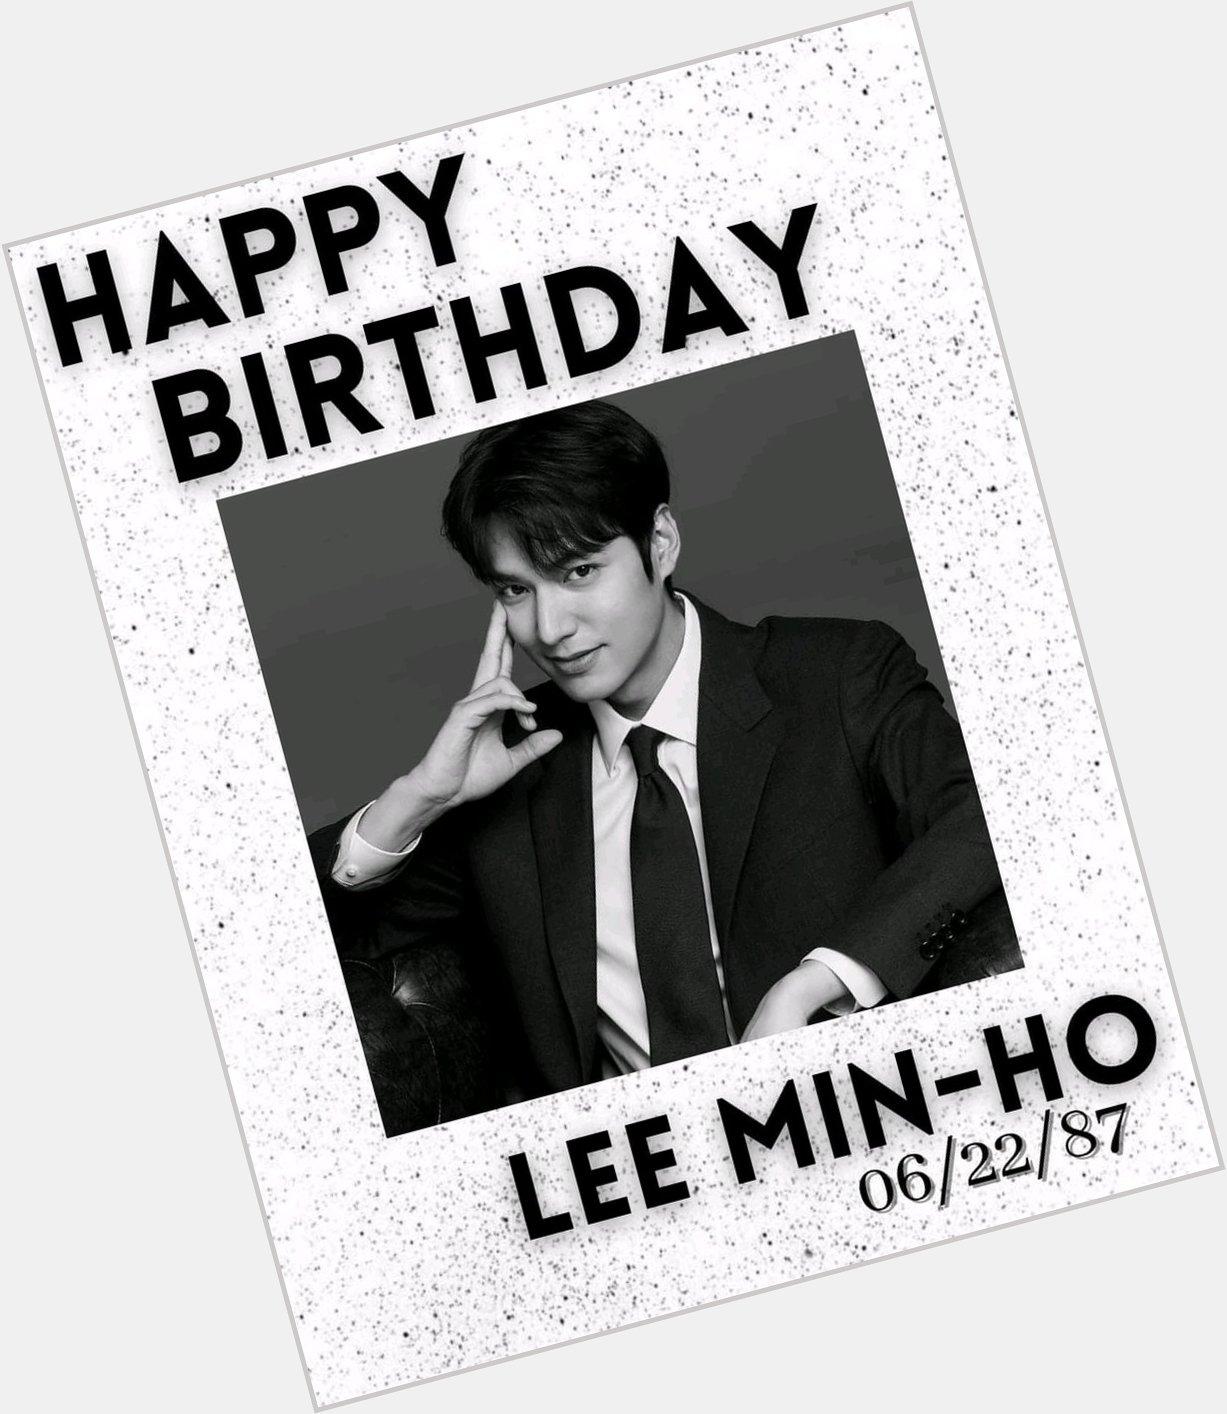  Happy birthday Lee Min Ho   